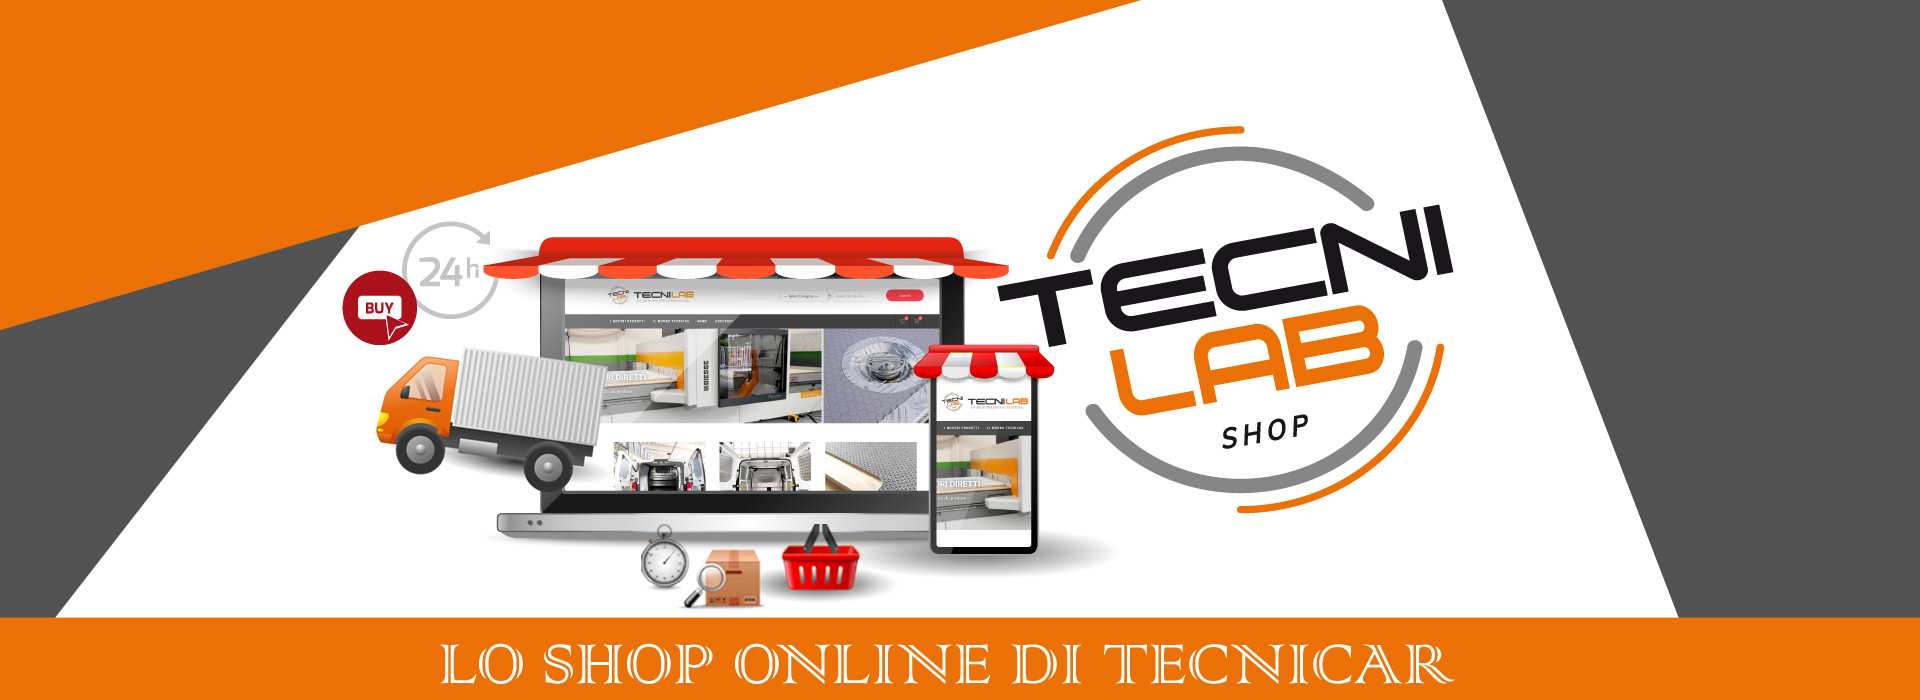 TecniLab, lo shop online di tecnicar